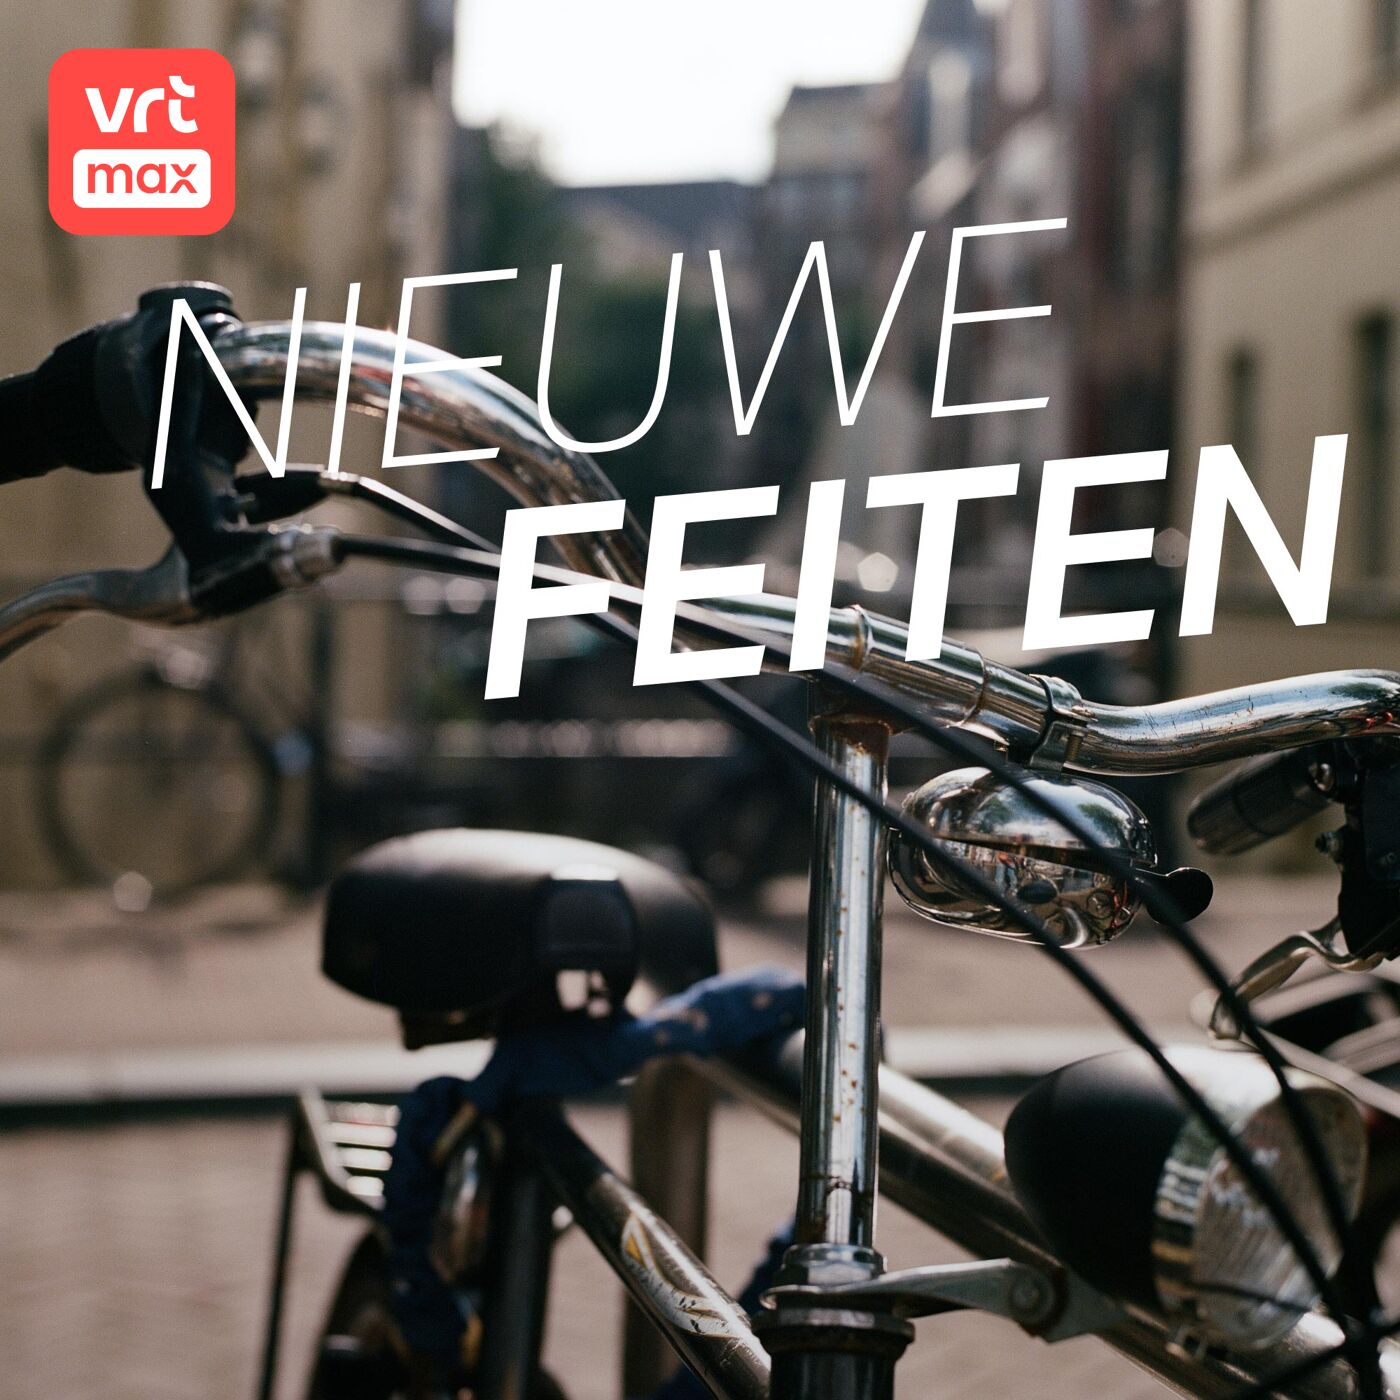 Op zes maanden tijd worden 70% van de fietsen in Amsterdam gestolen